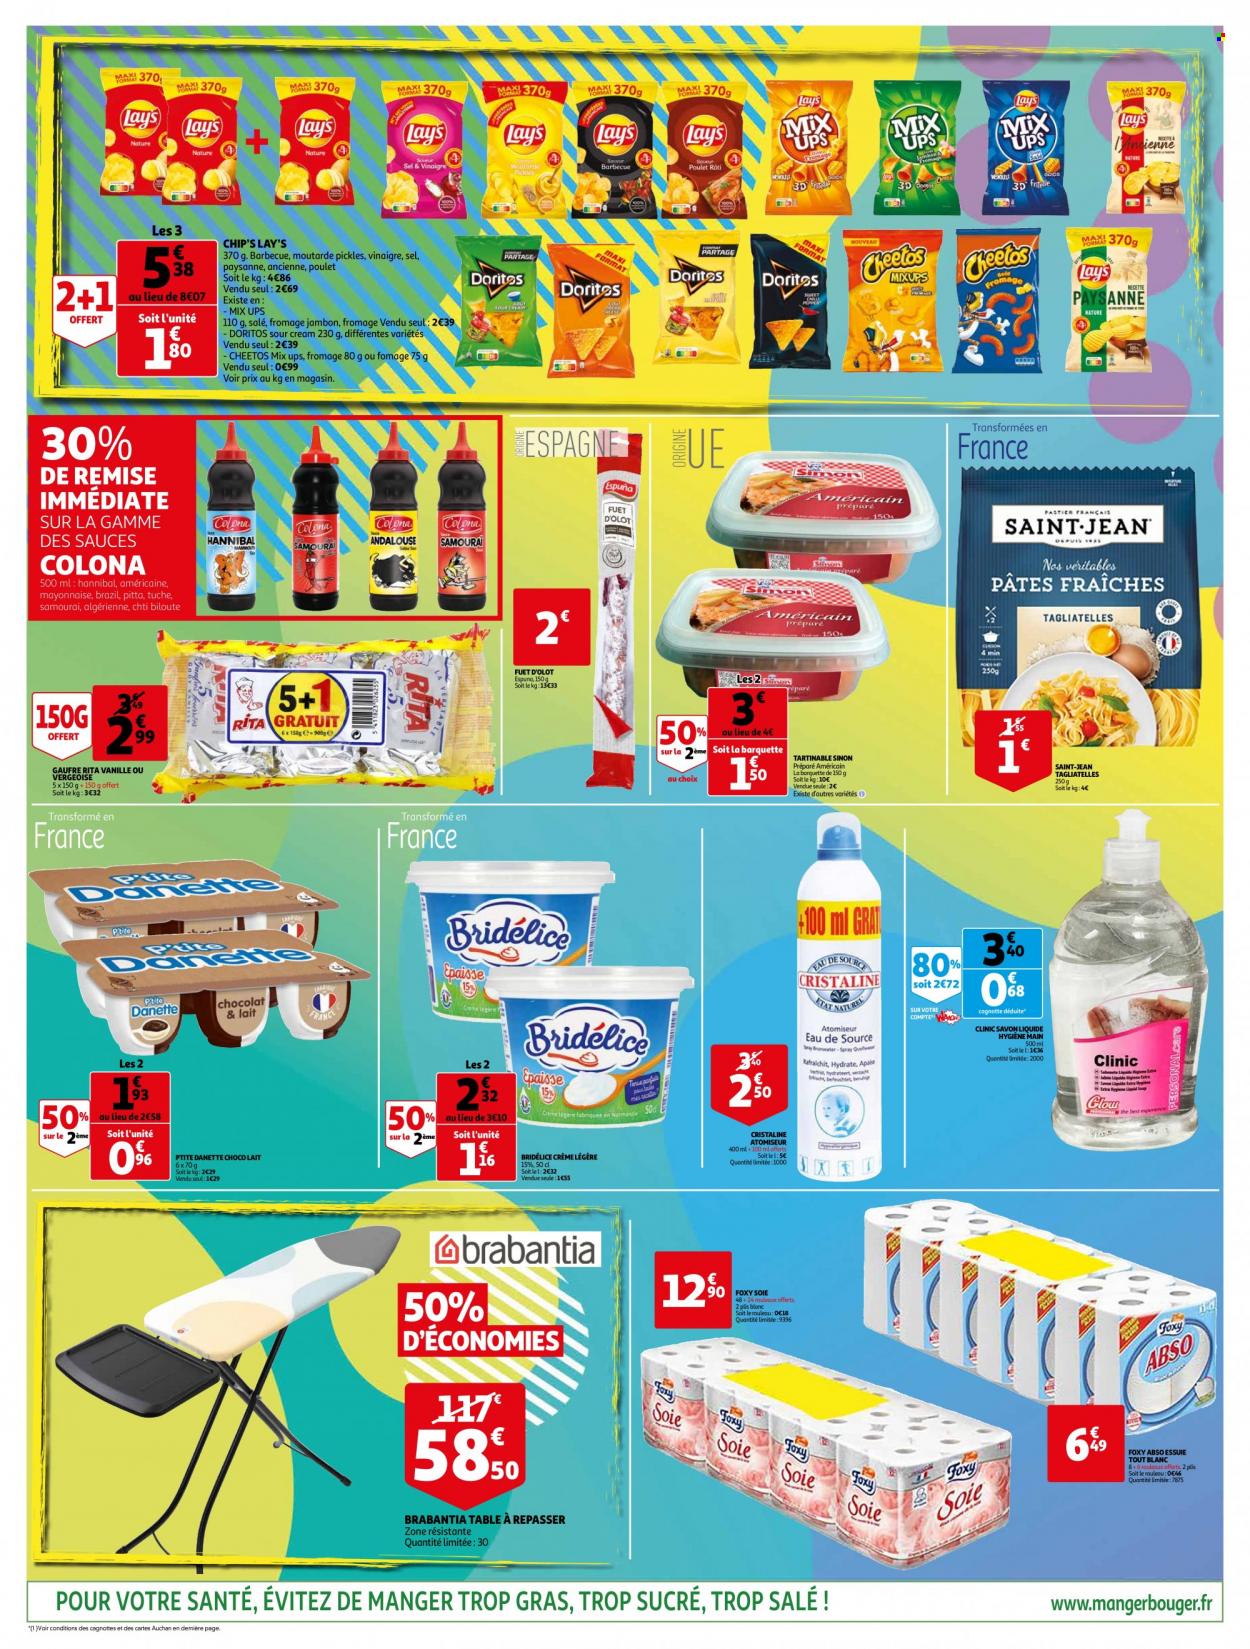 thumbnail - Catalogue Auchan - 18/05/2022 - 24/05/2022 - Produits soldés - jambon, fuet, Danette, chocolat, chips, Lay’s, Doritos, sel, pâtes, tagliatelles, vinaigre, eau de source, Cristaline, savon, table à repasser. Page 3.